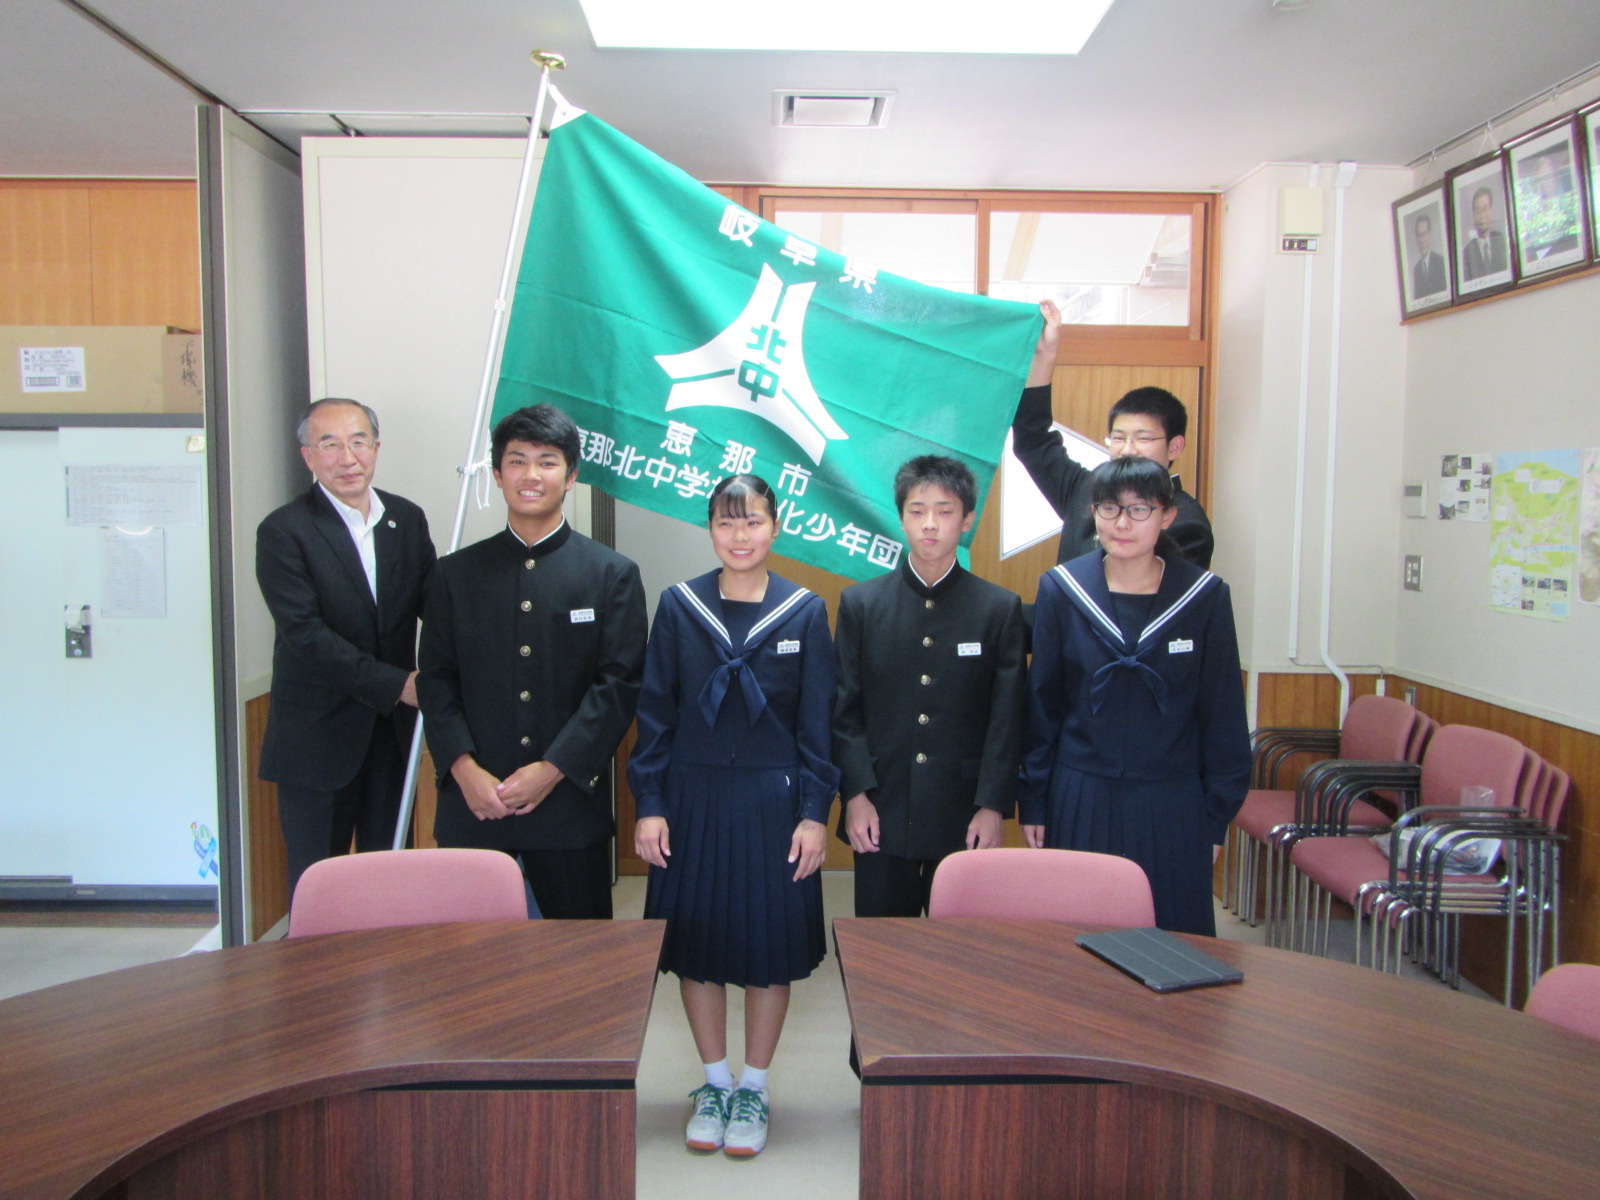 緑化少年団の団旗を授与された恵那北中学校生徒会